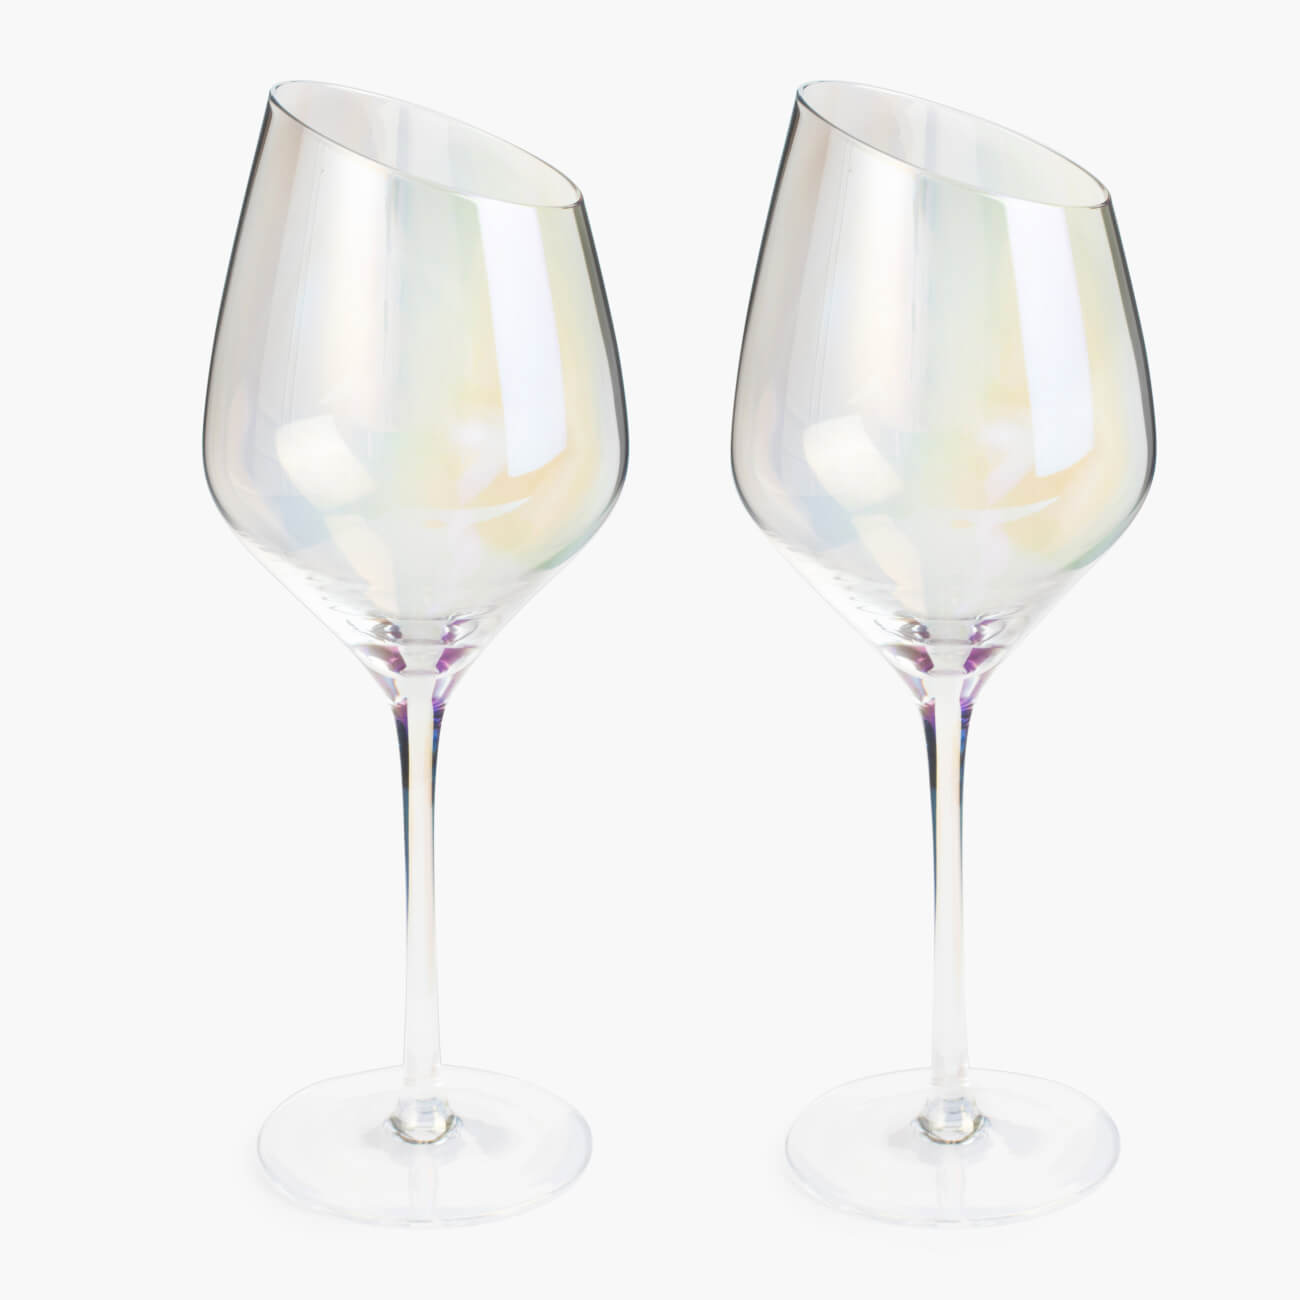 Бокал для белого вина, 460 мл, 4 шт, стекло, перламутр, Charm L polar бокал для белого вина 460 мл 4 шт charm l